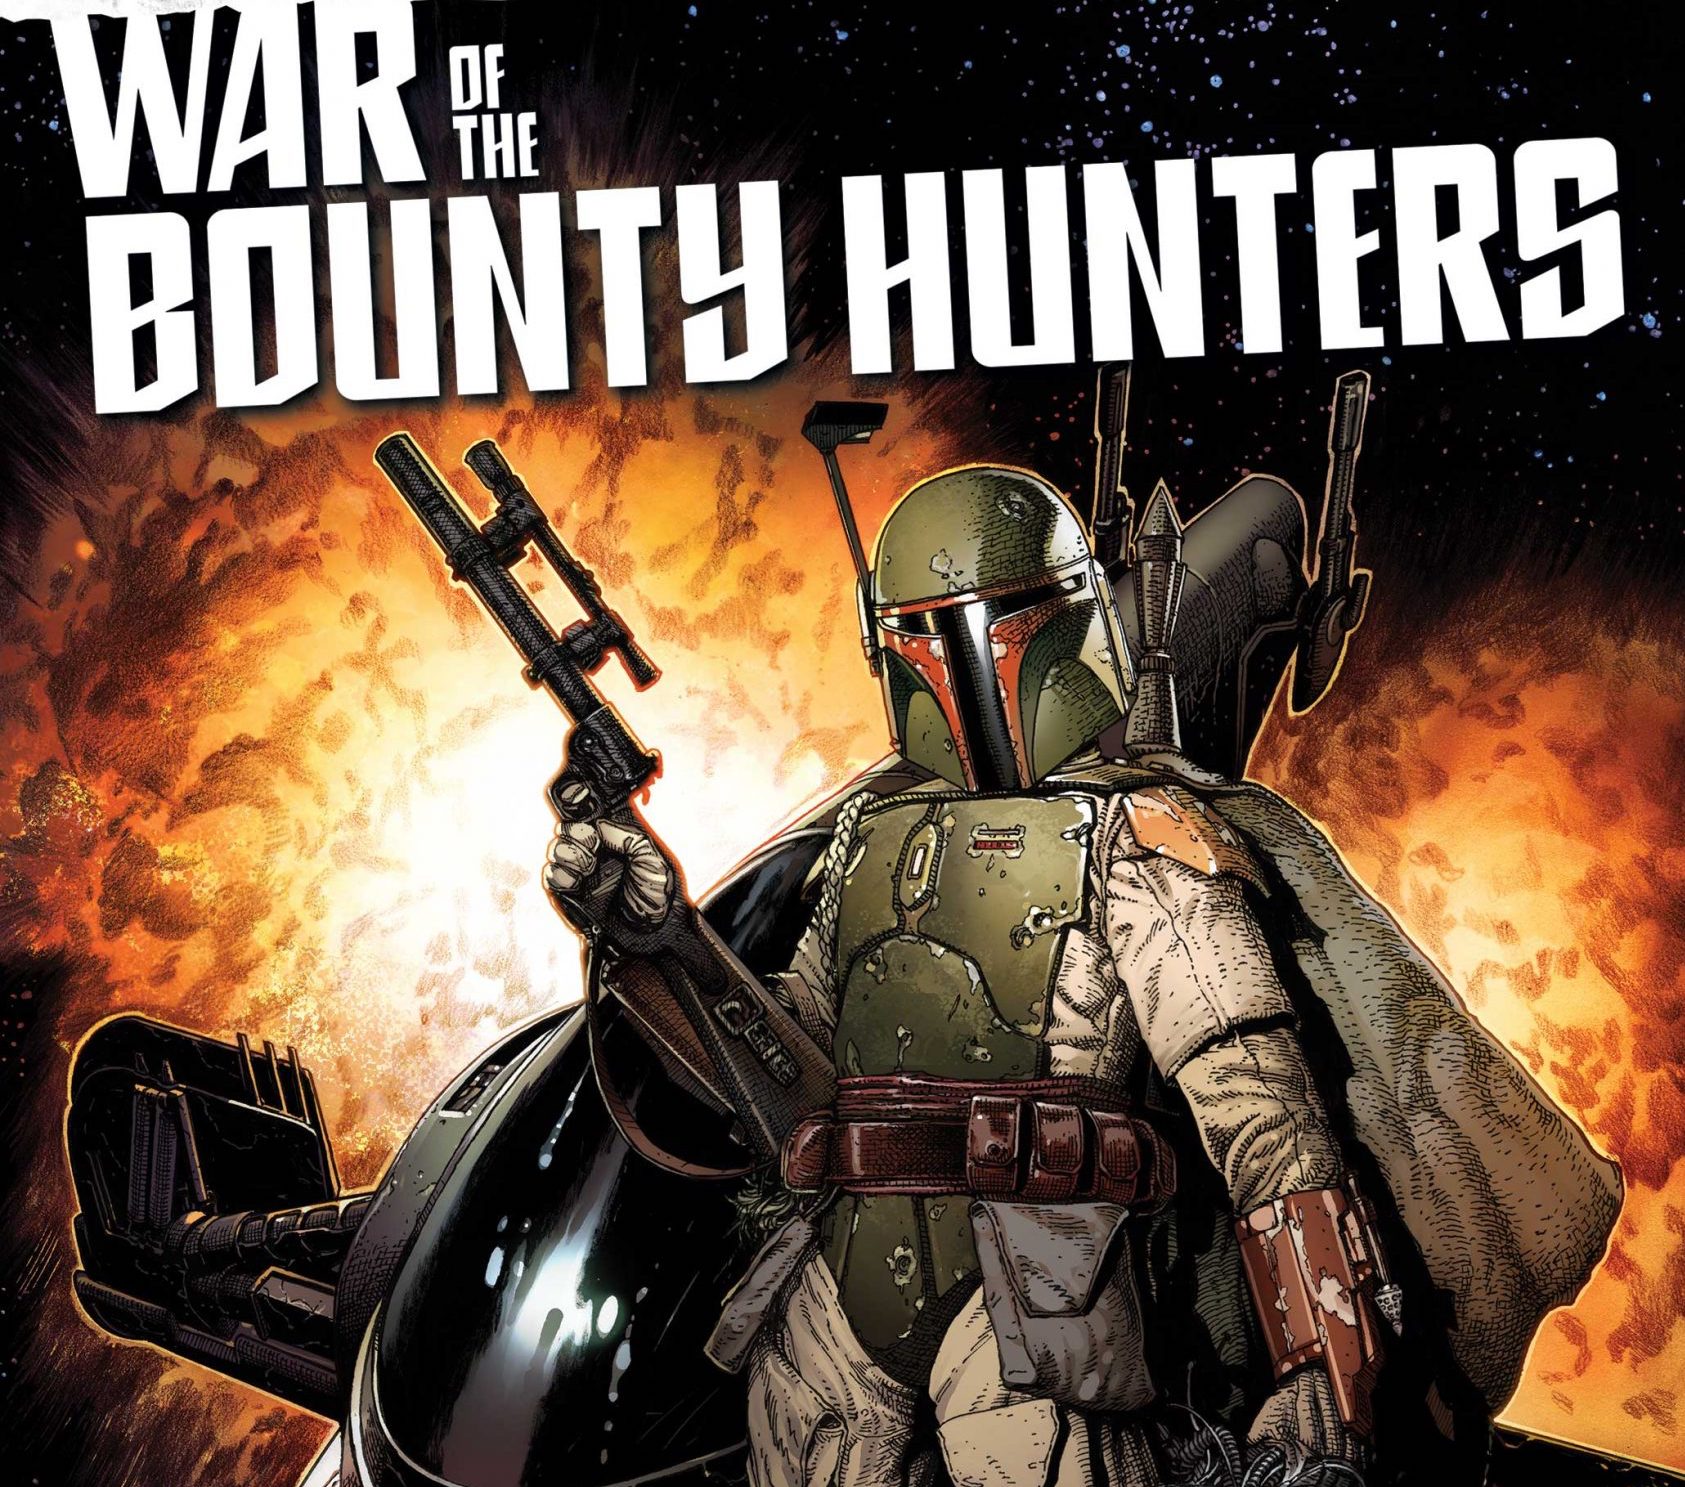 'Star Wars: War of the Bounty Hunters' #1 is a fandom-friendly story